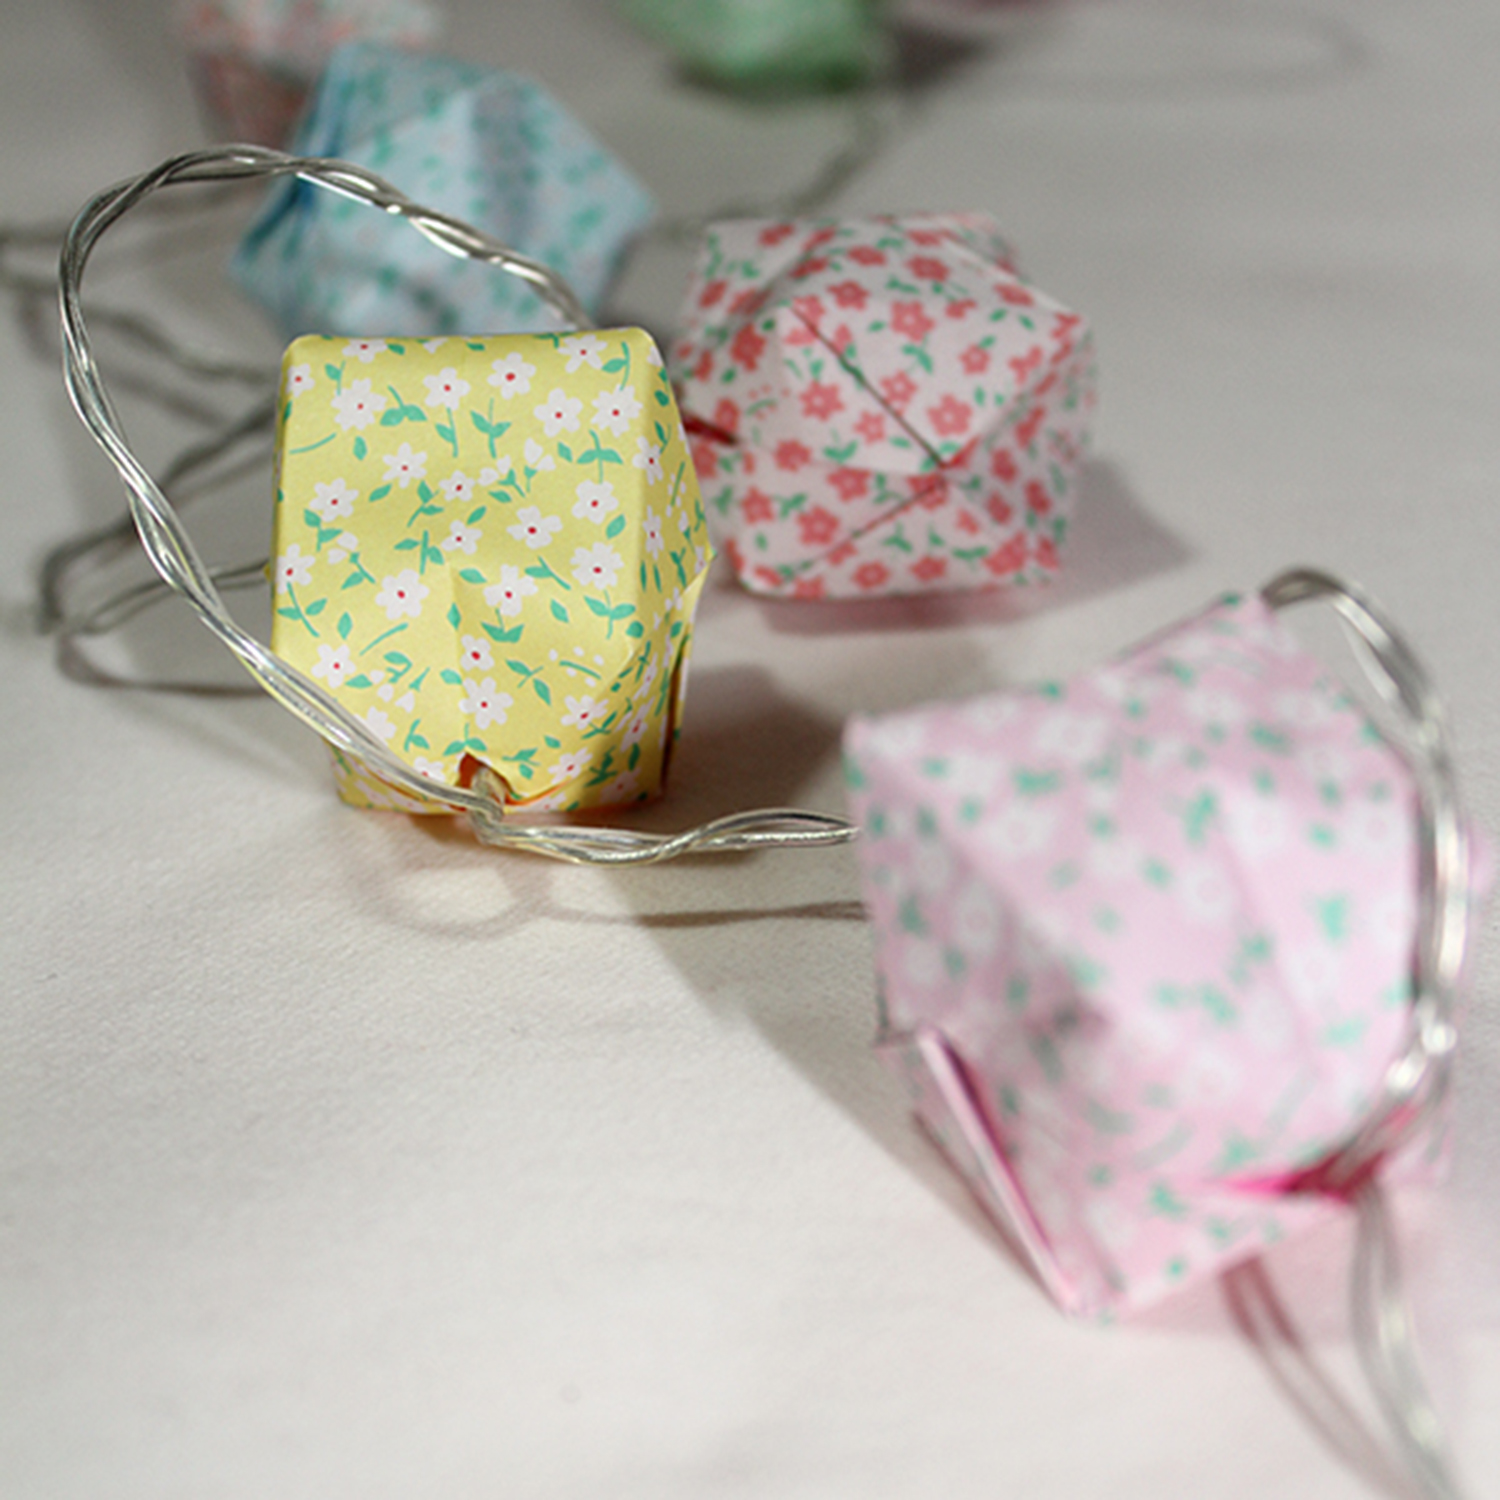 DIY Guirlande de cubes en origami